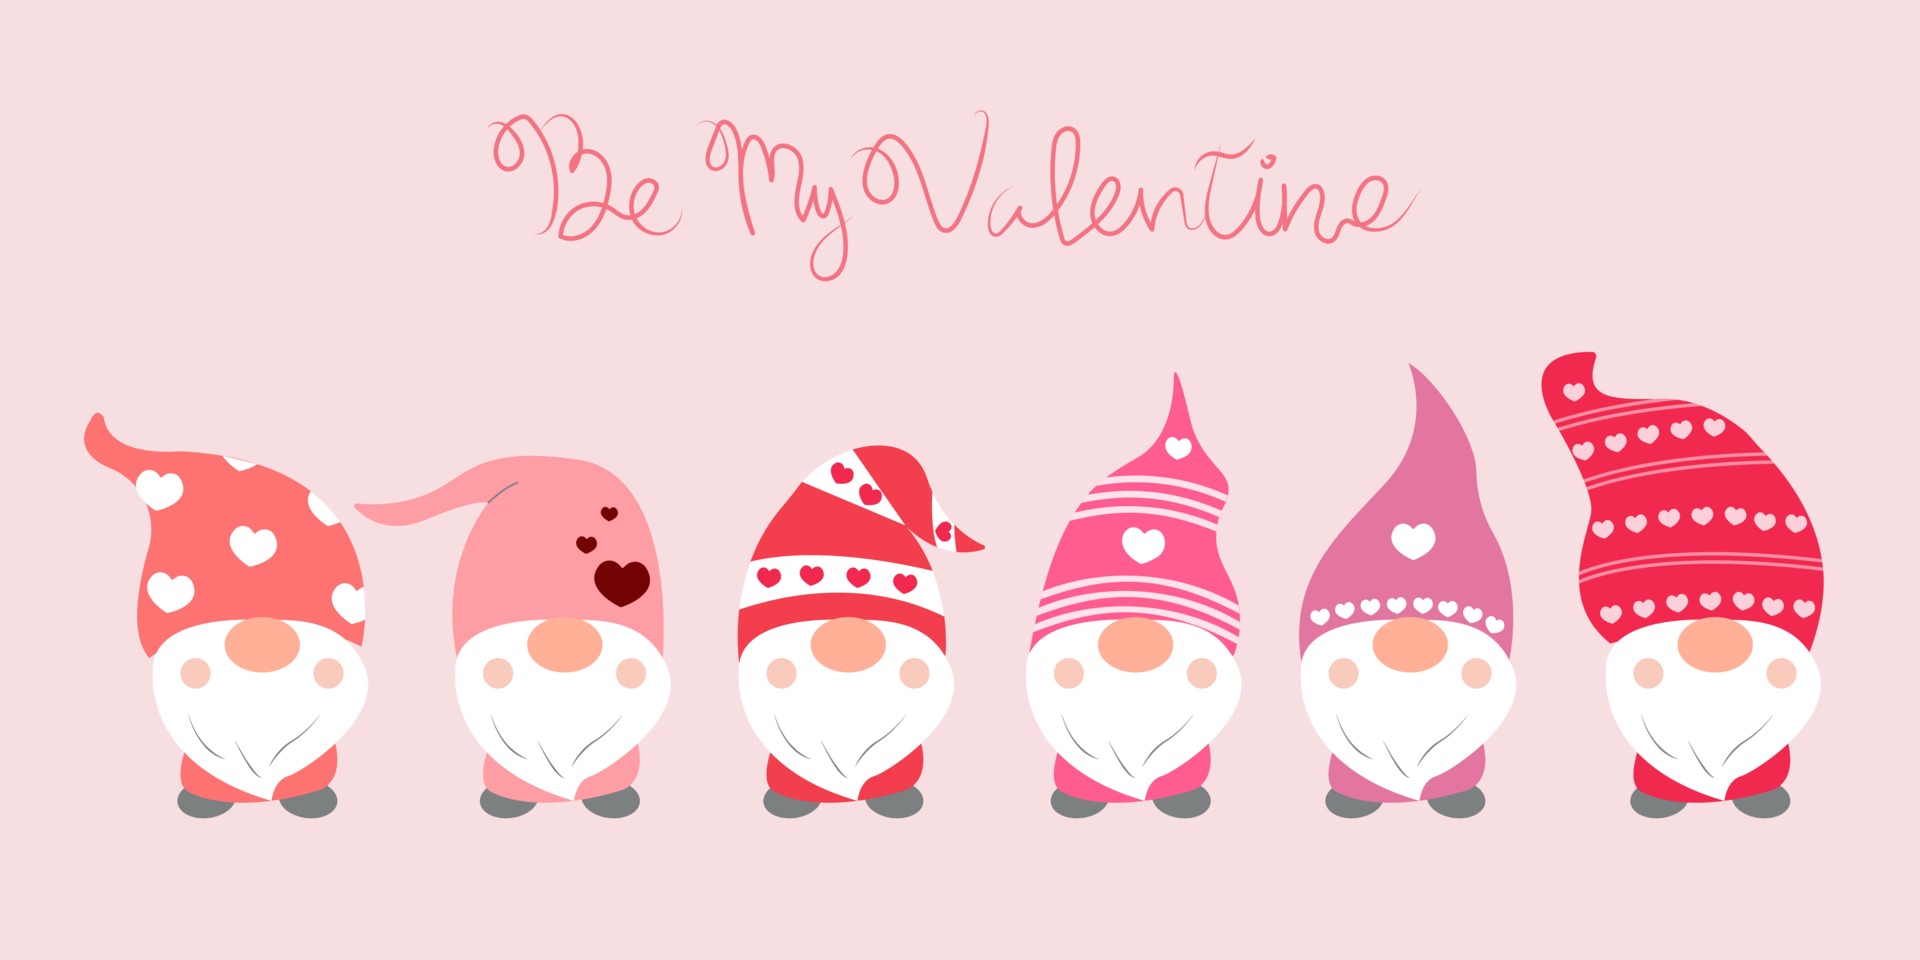 Chào mừng ngày Lễ Valentine đến với bộ sưu tập Gnome đặc biệt của chúng tôi! Những chú lùn này sẽ mang đến cho bạn và cặp đôi của bạn những lời chúc tốt đẹp nhất trong ngày đặc biệt này. Hãy cùng khám phá những hình ảnh đáng yêu về những chú Gnome ngộ nghĩnh nhé!